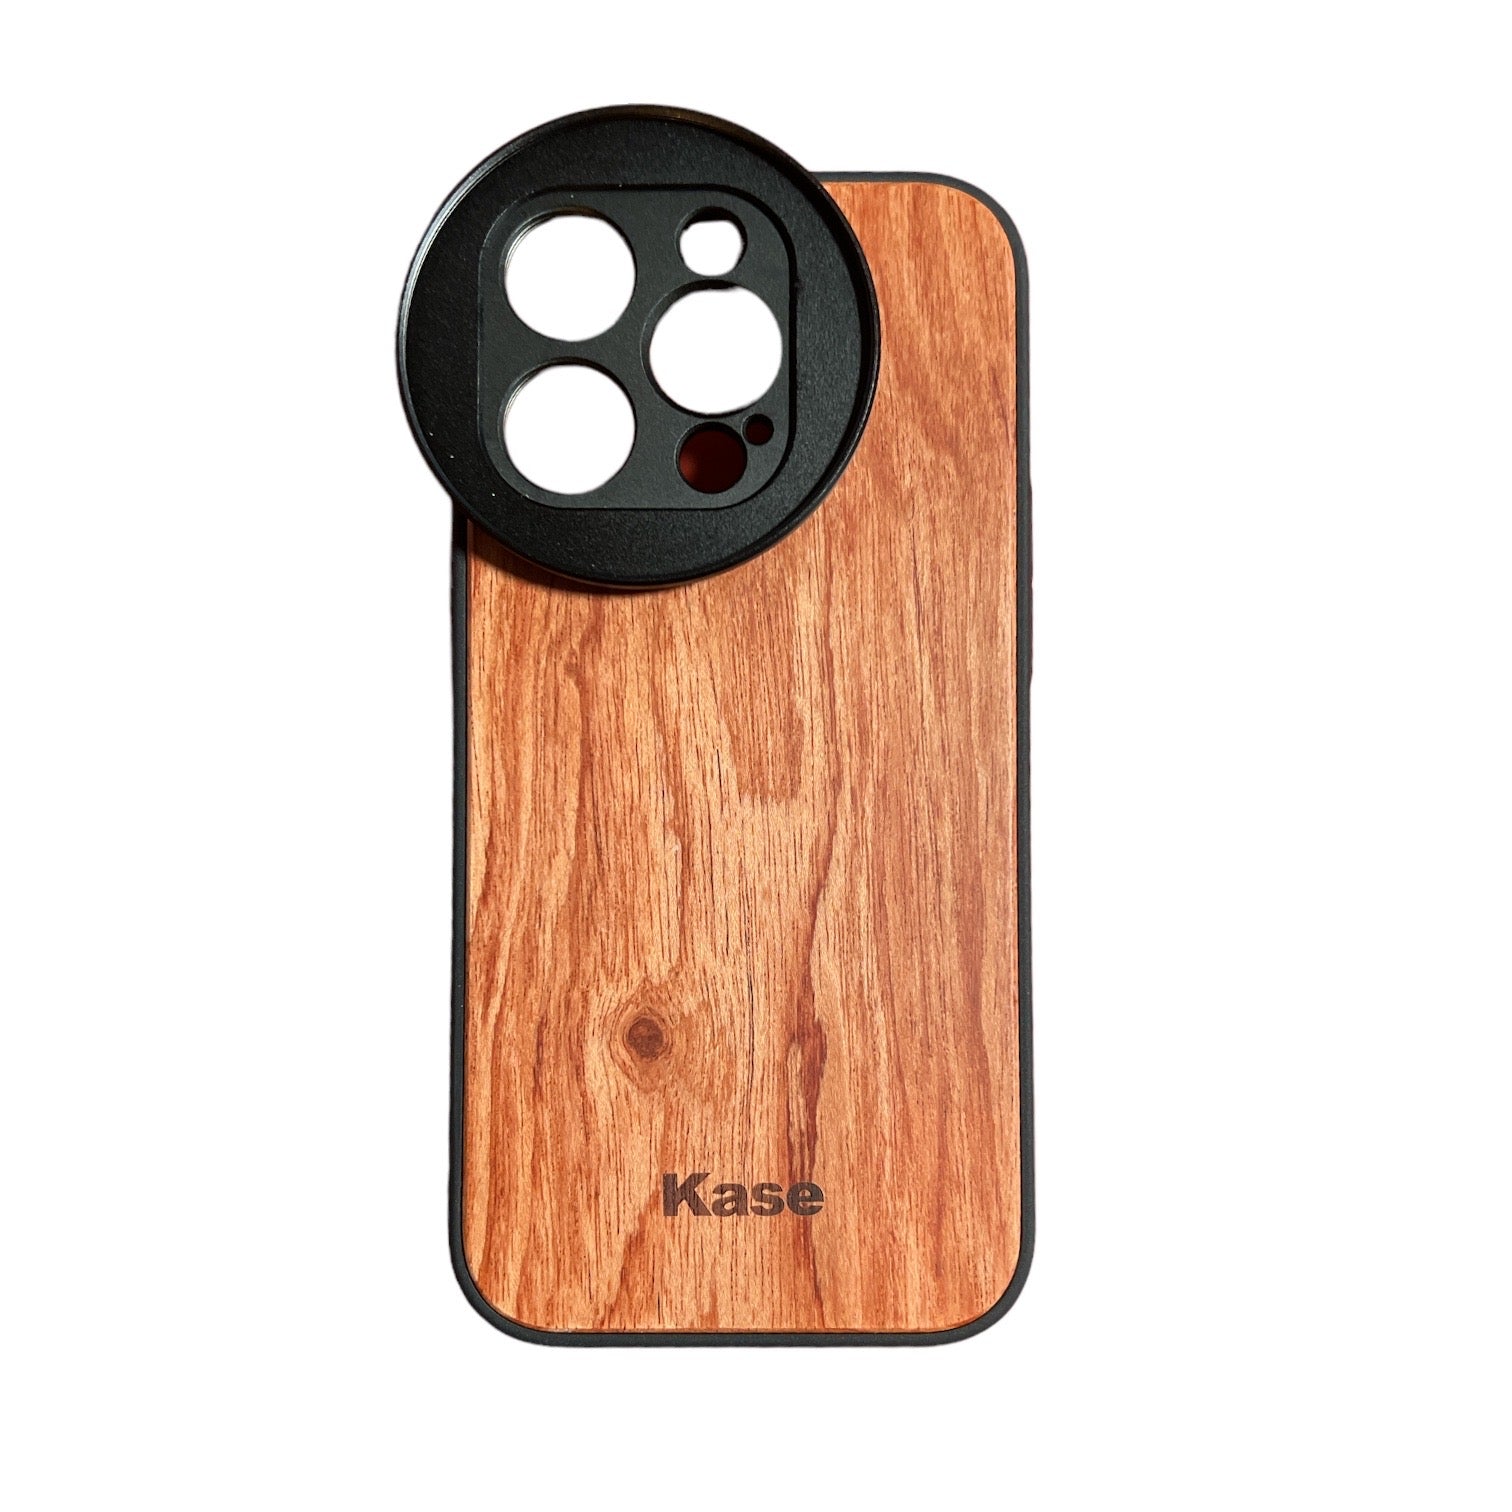 Kase Lens Case for iPhone 14 Pro